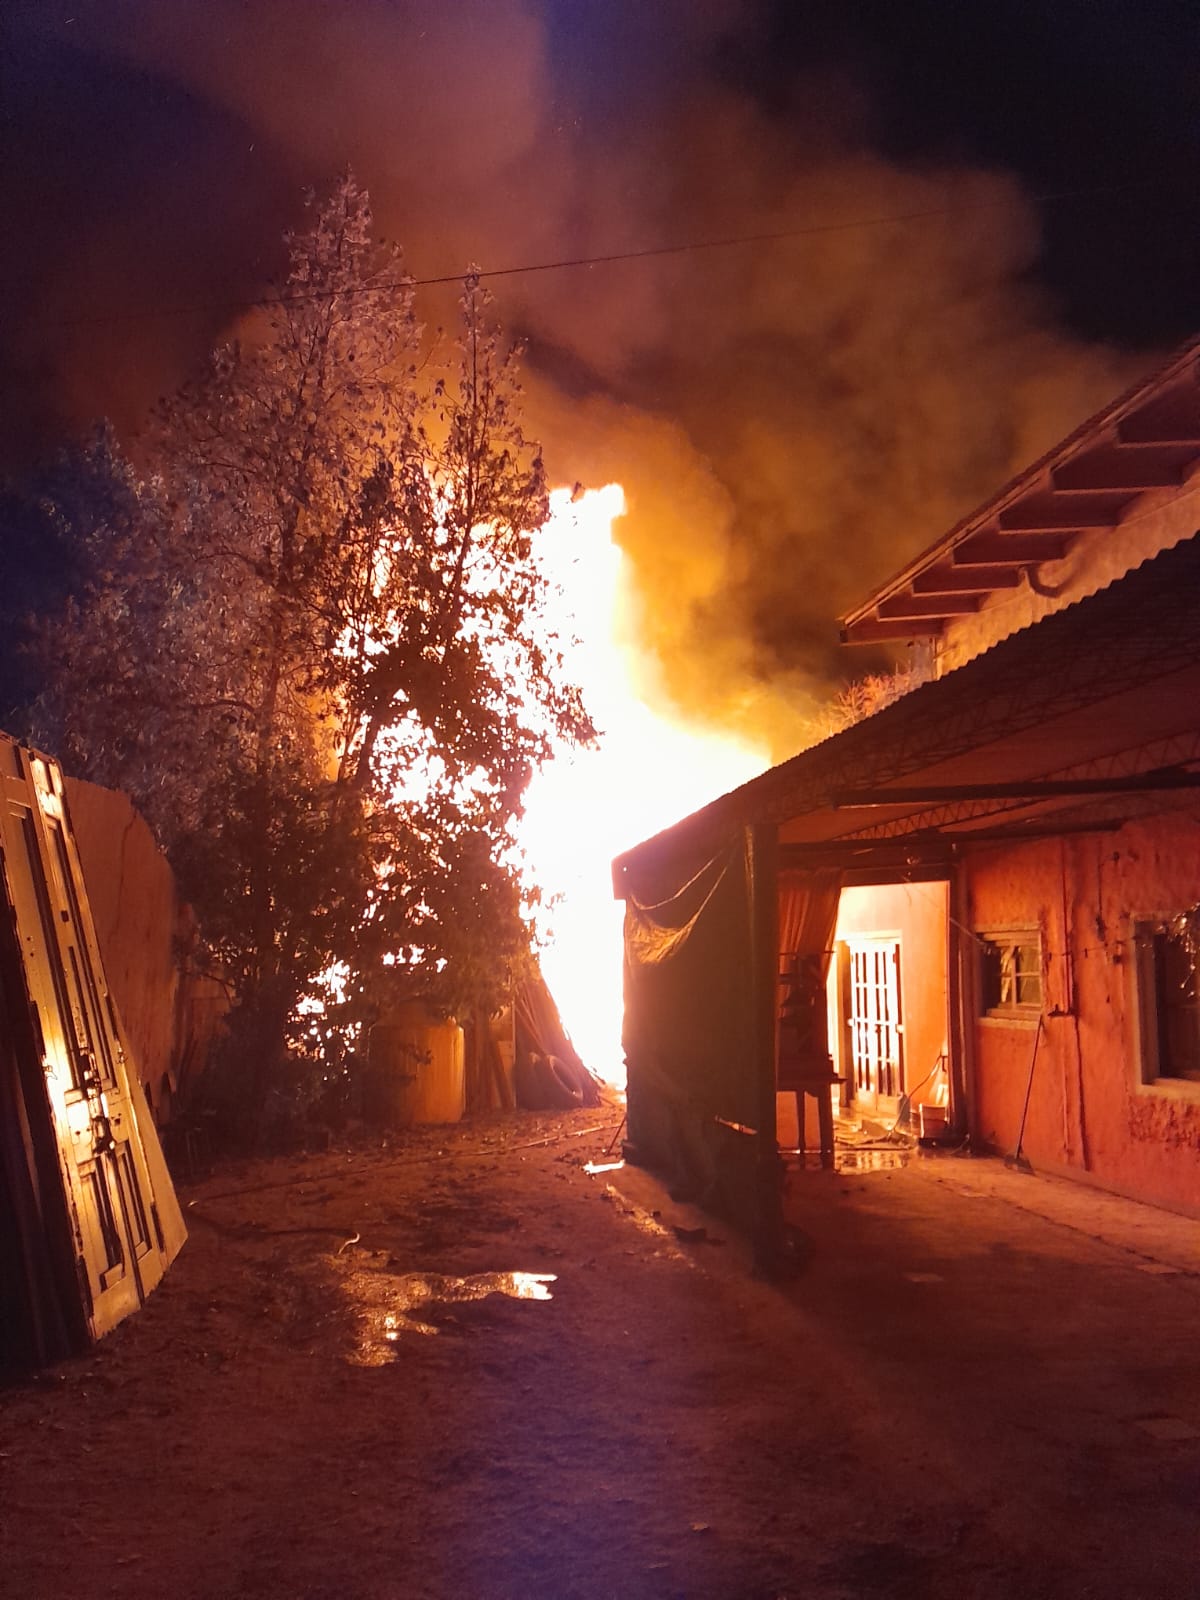 Un impresionante incendio devastó una carpintería en barrio El Cerrito